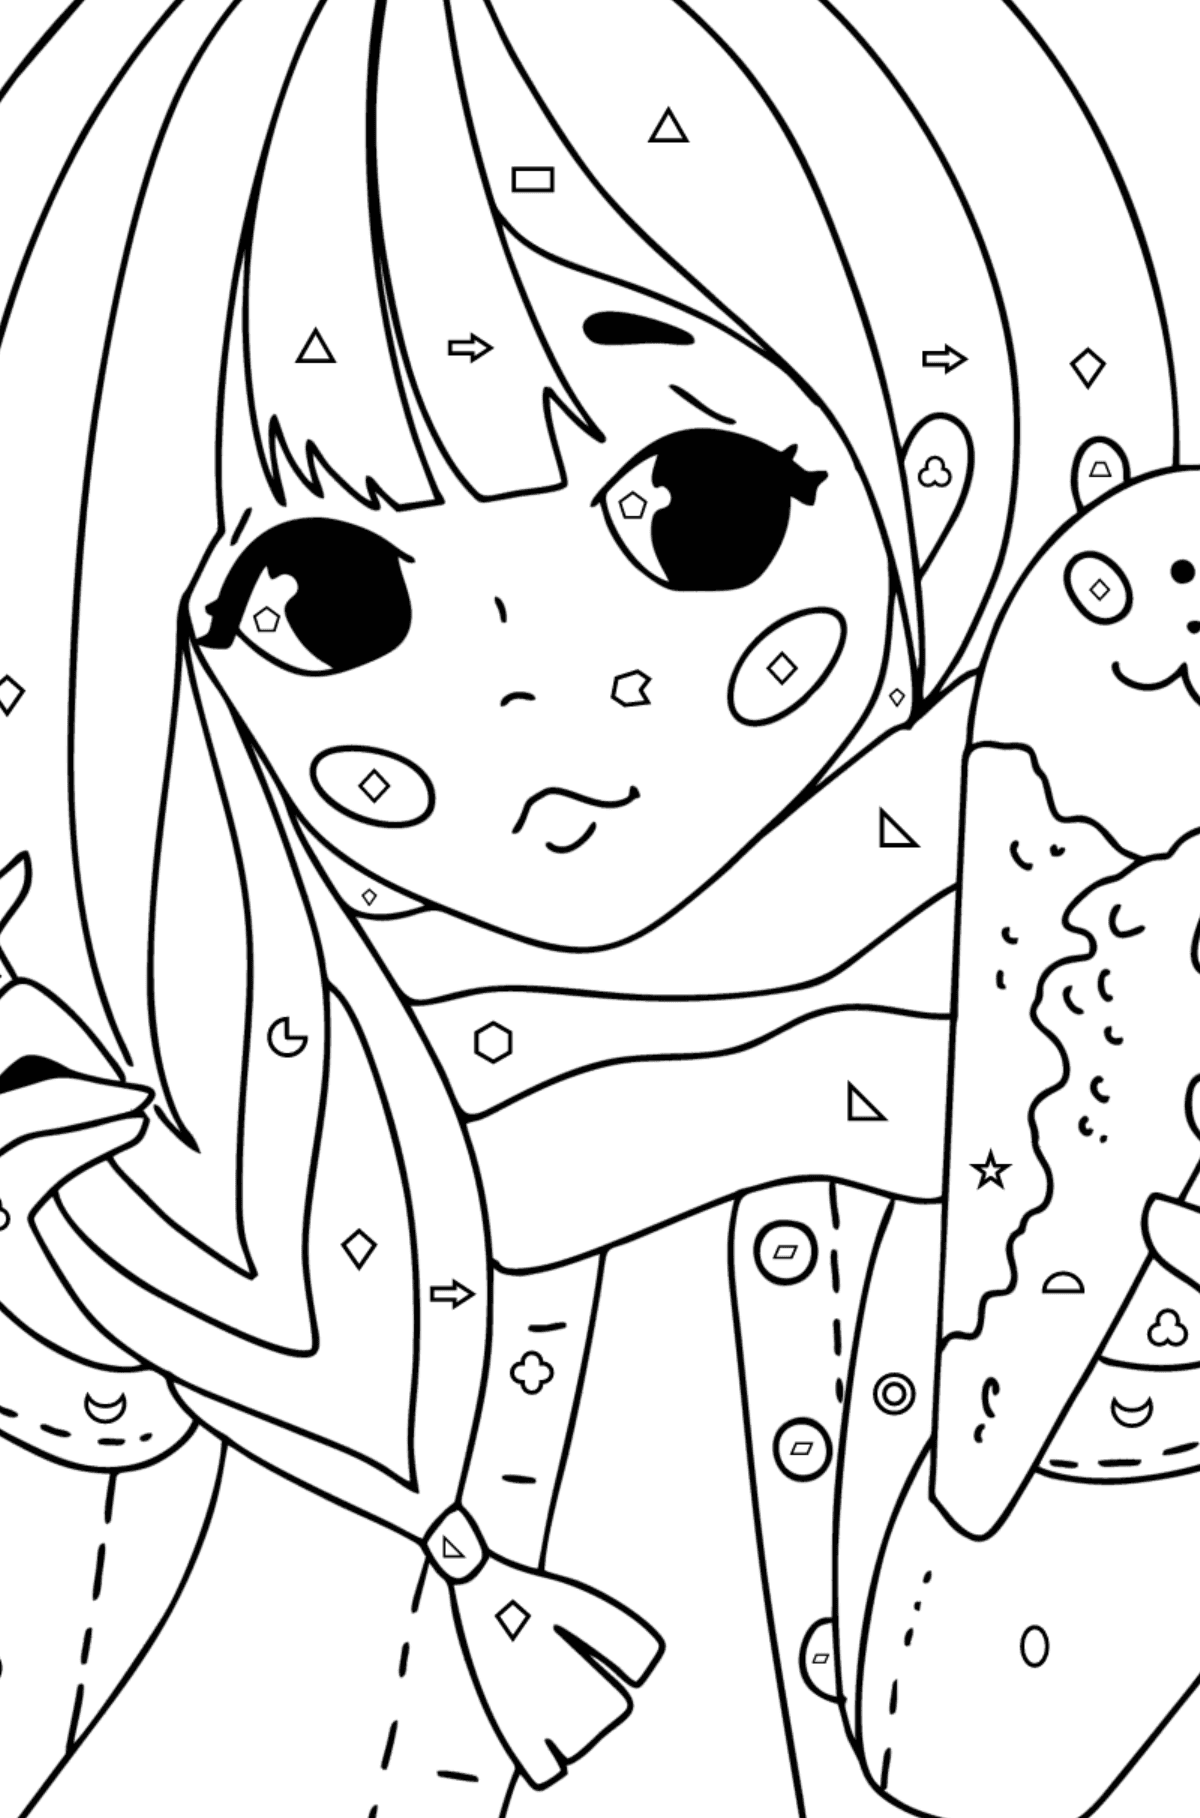 Hezká anime dívka omalovánka - Omalovánka podle Geometrických tvarů pro děti